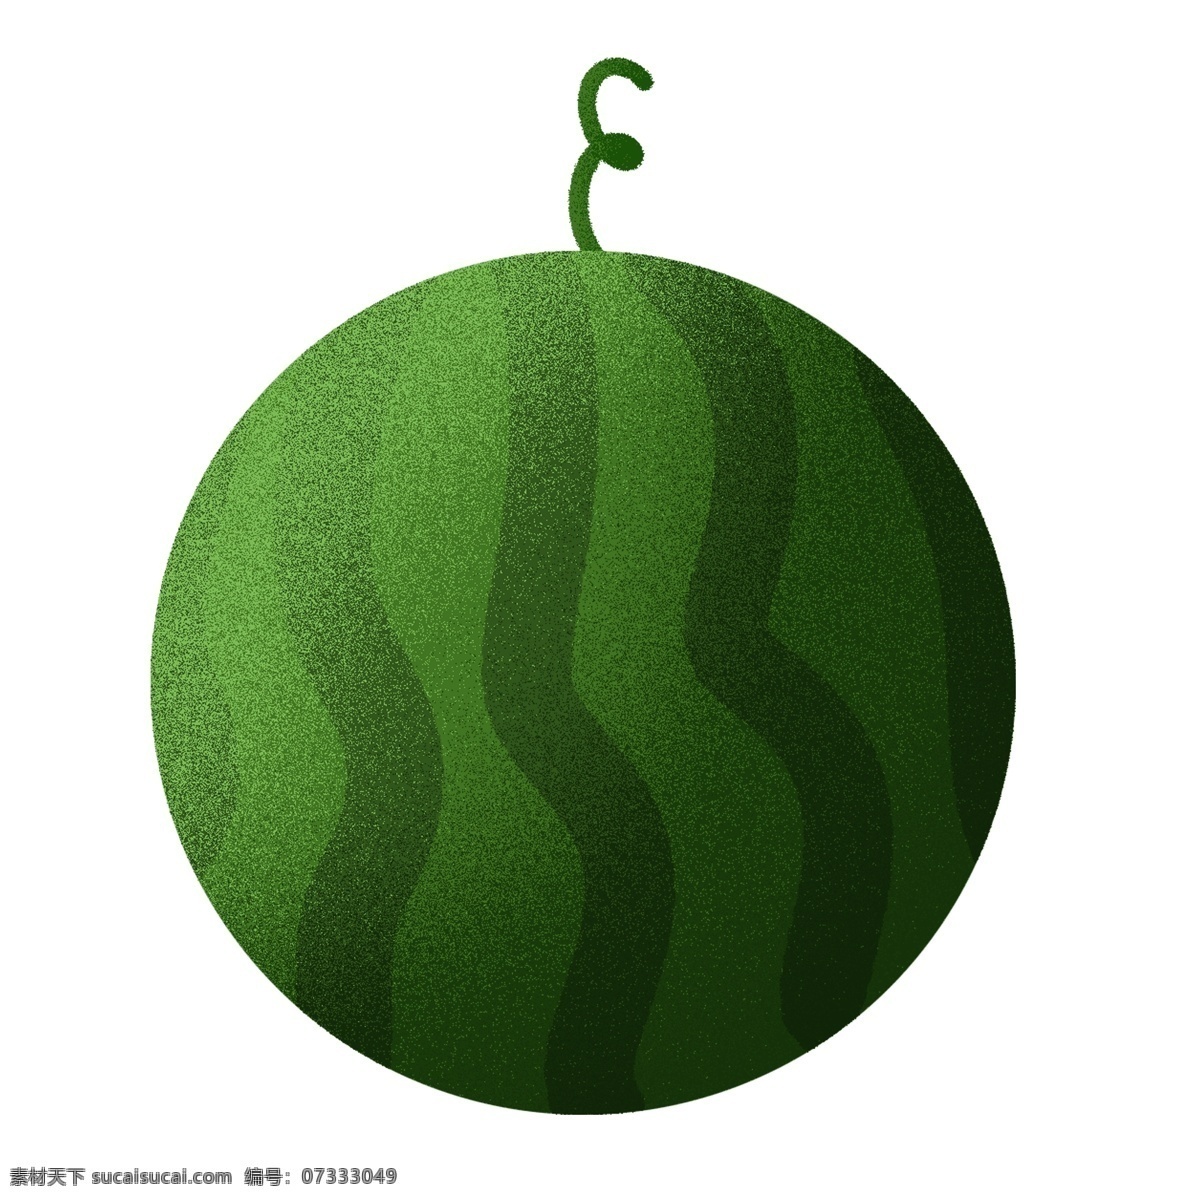 绿色 大 西瓜 插画 图案 水果 圆形 卡通 彩色 小清新 创意 手绘 元素 现代 简约 装饰